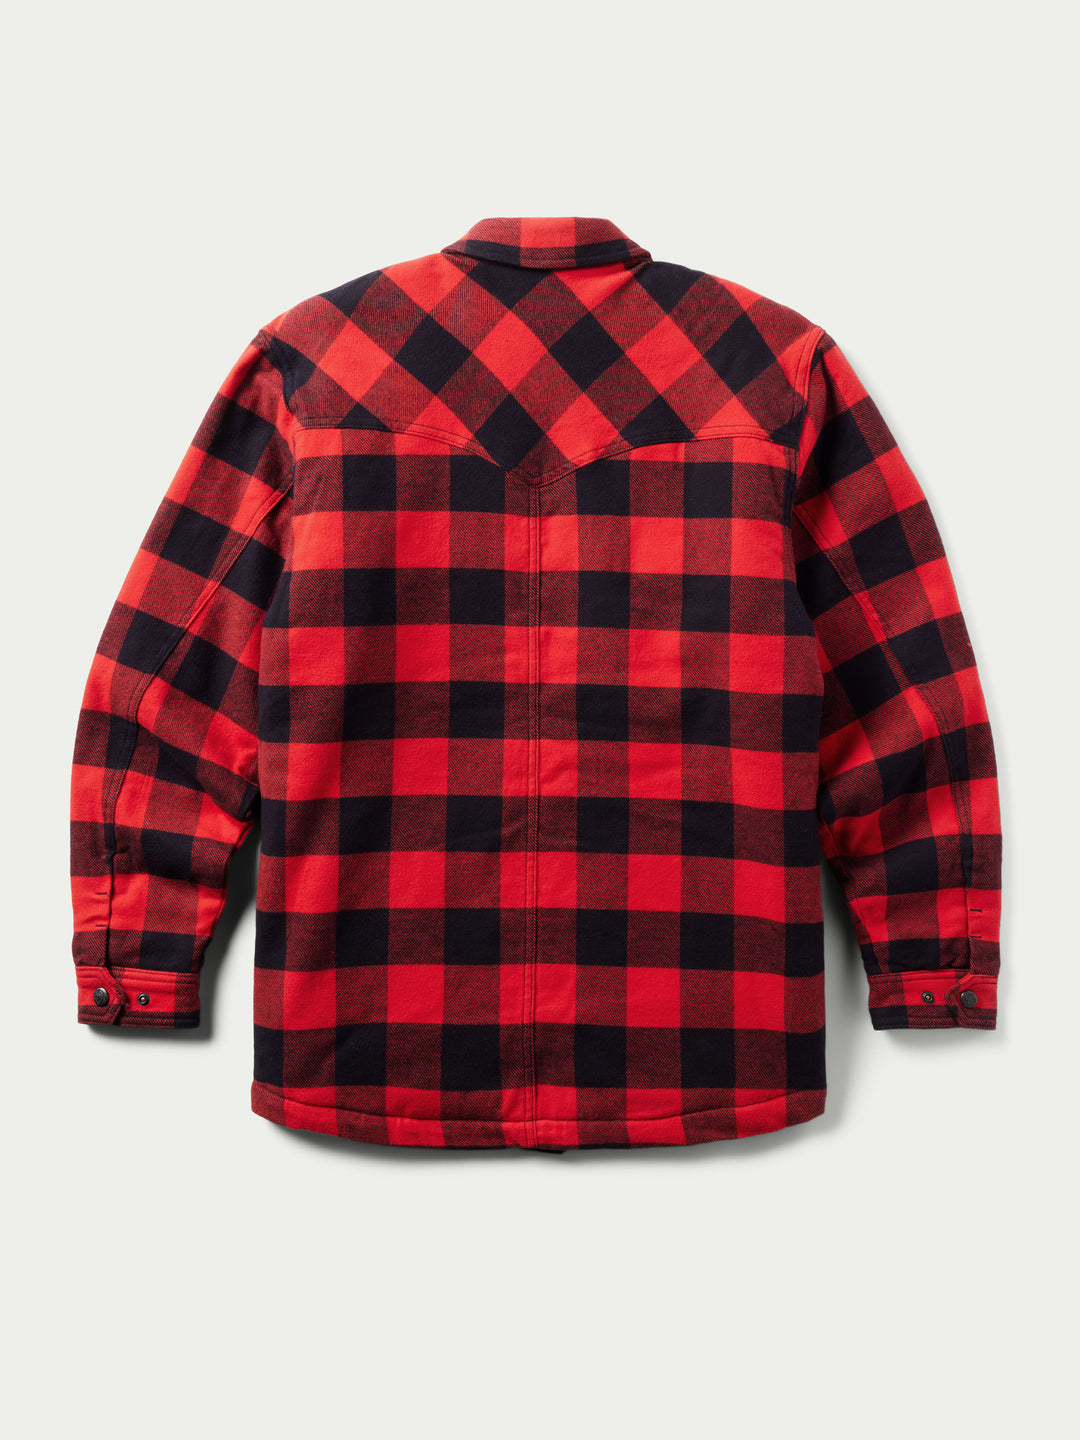 Huron Shirt Jacket - Schaefer Outfitter